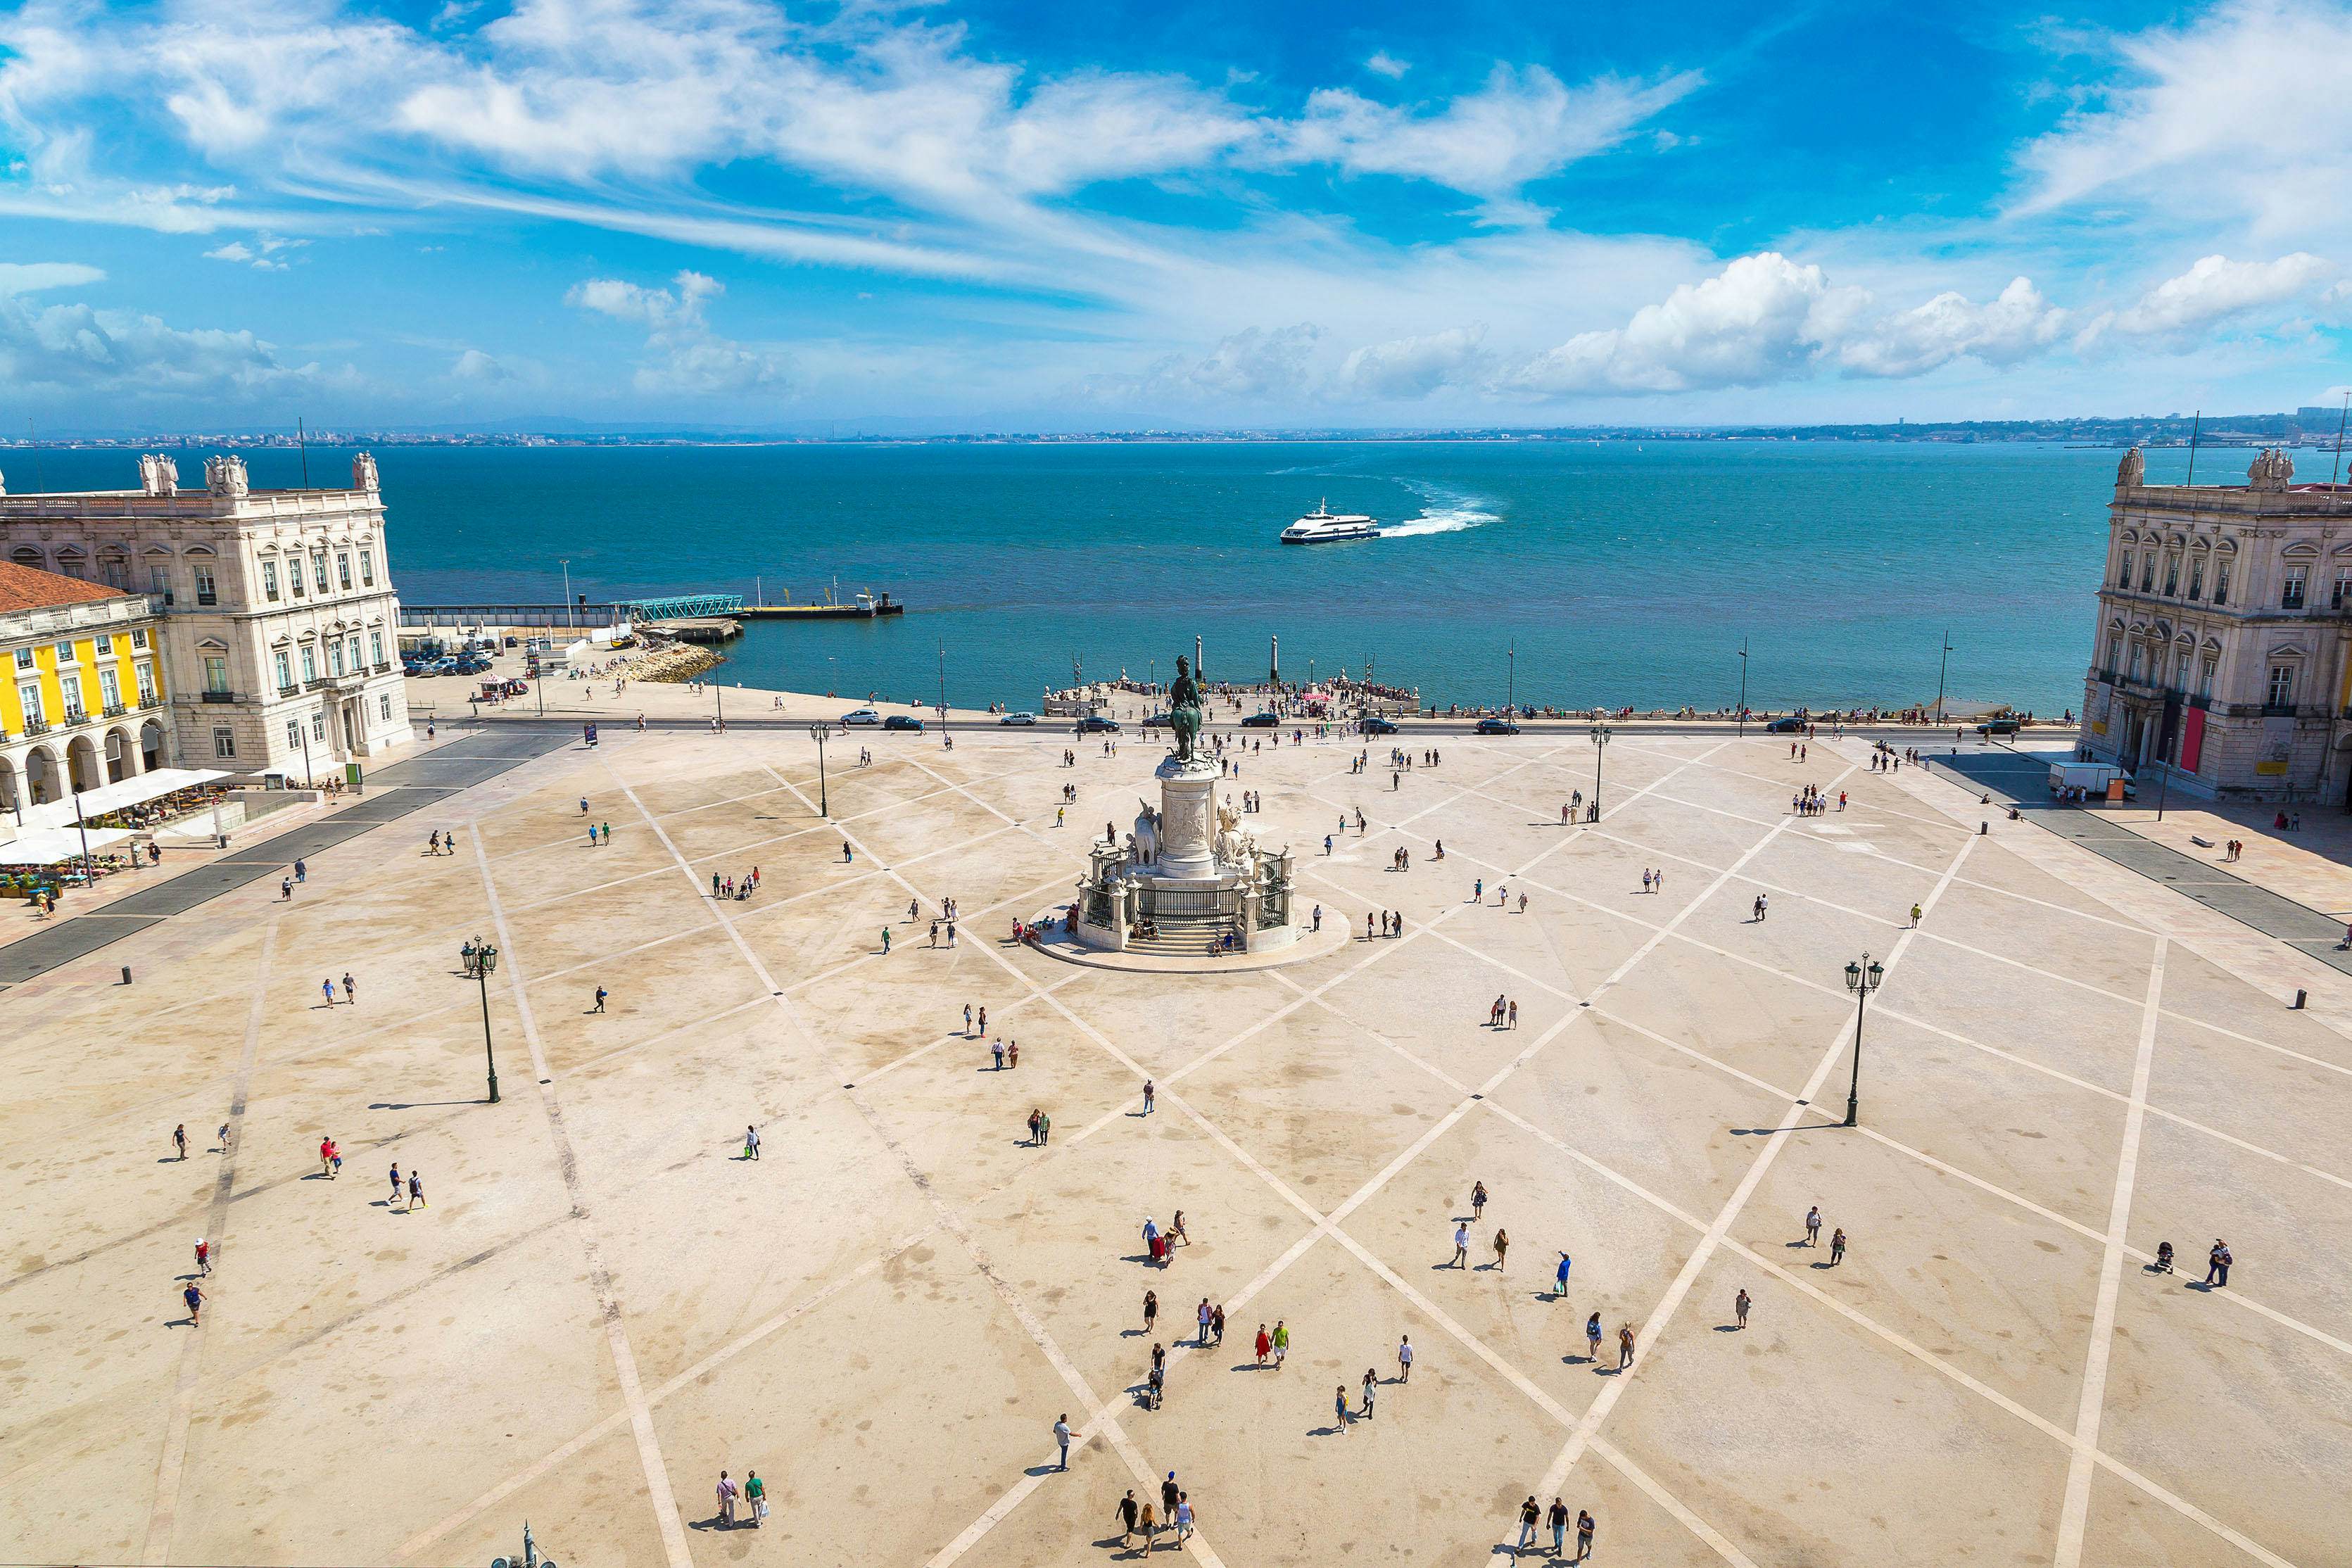 Praça do Comércio | Baixa & Rossio, Lisbon | Attractions - Lonely Planet